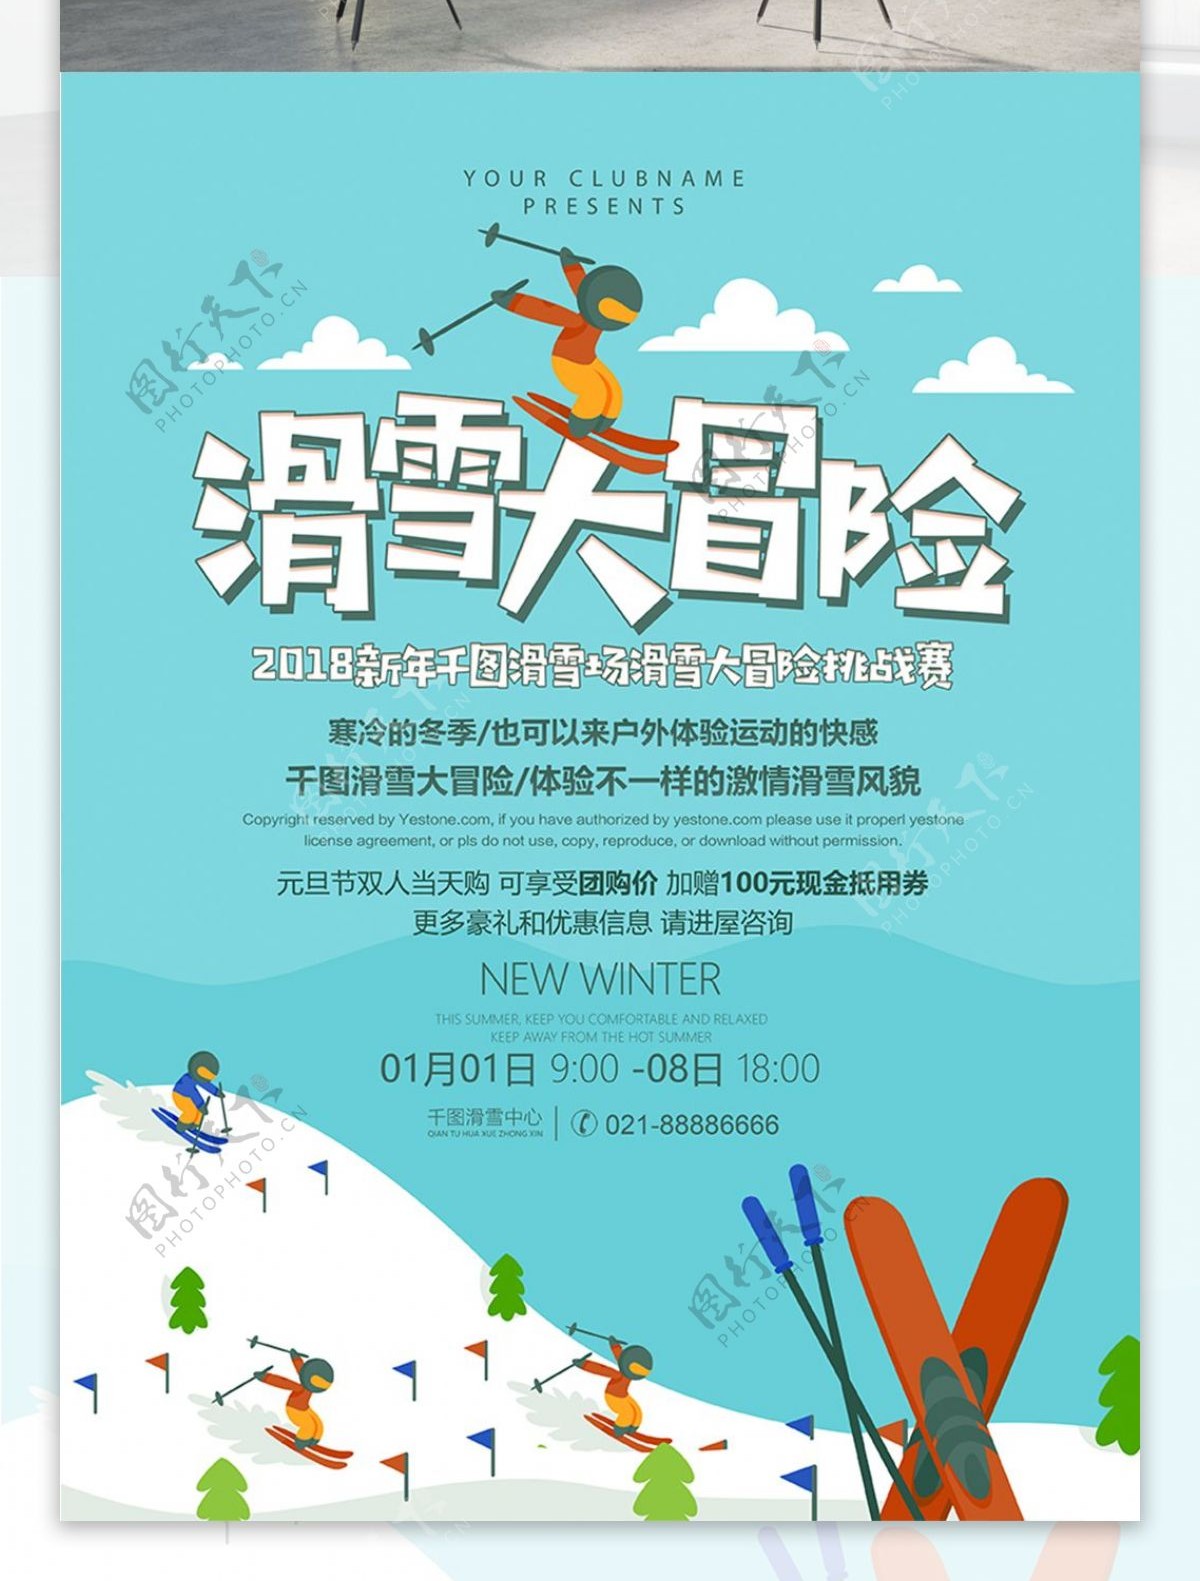 滑雪大冒险滑雪促销活动海报PSD源文件